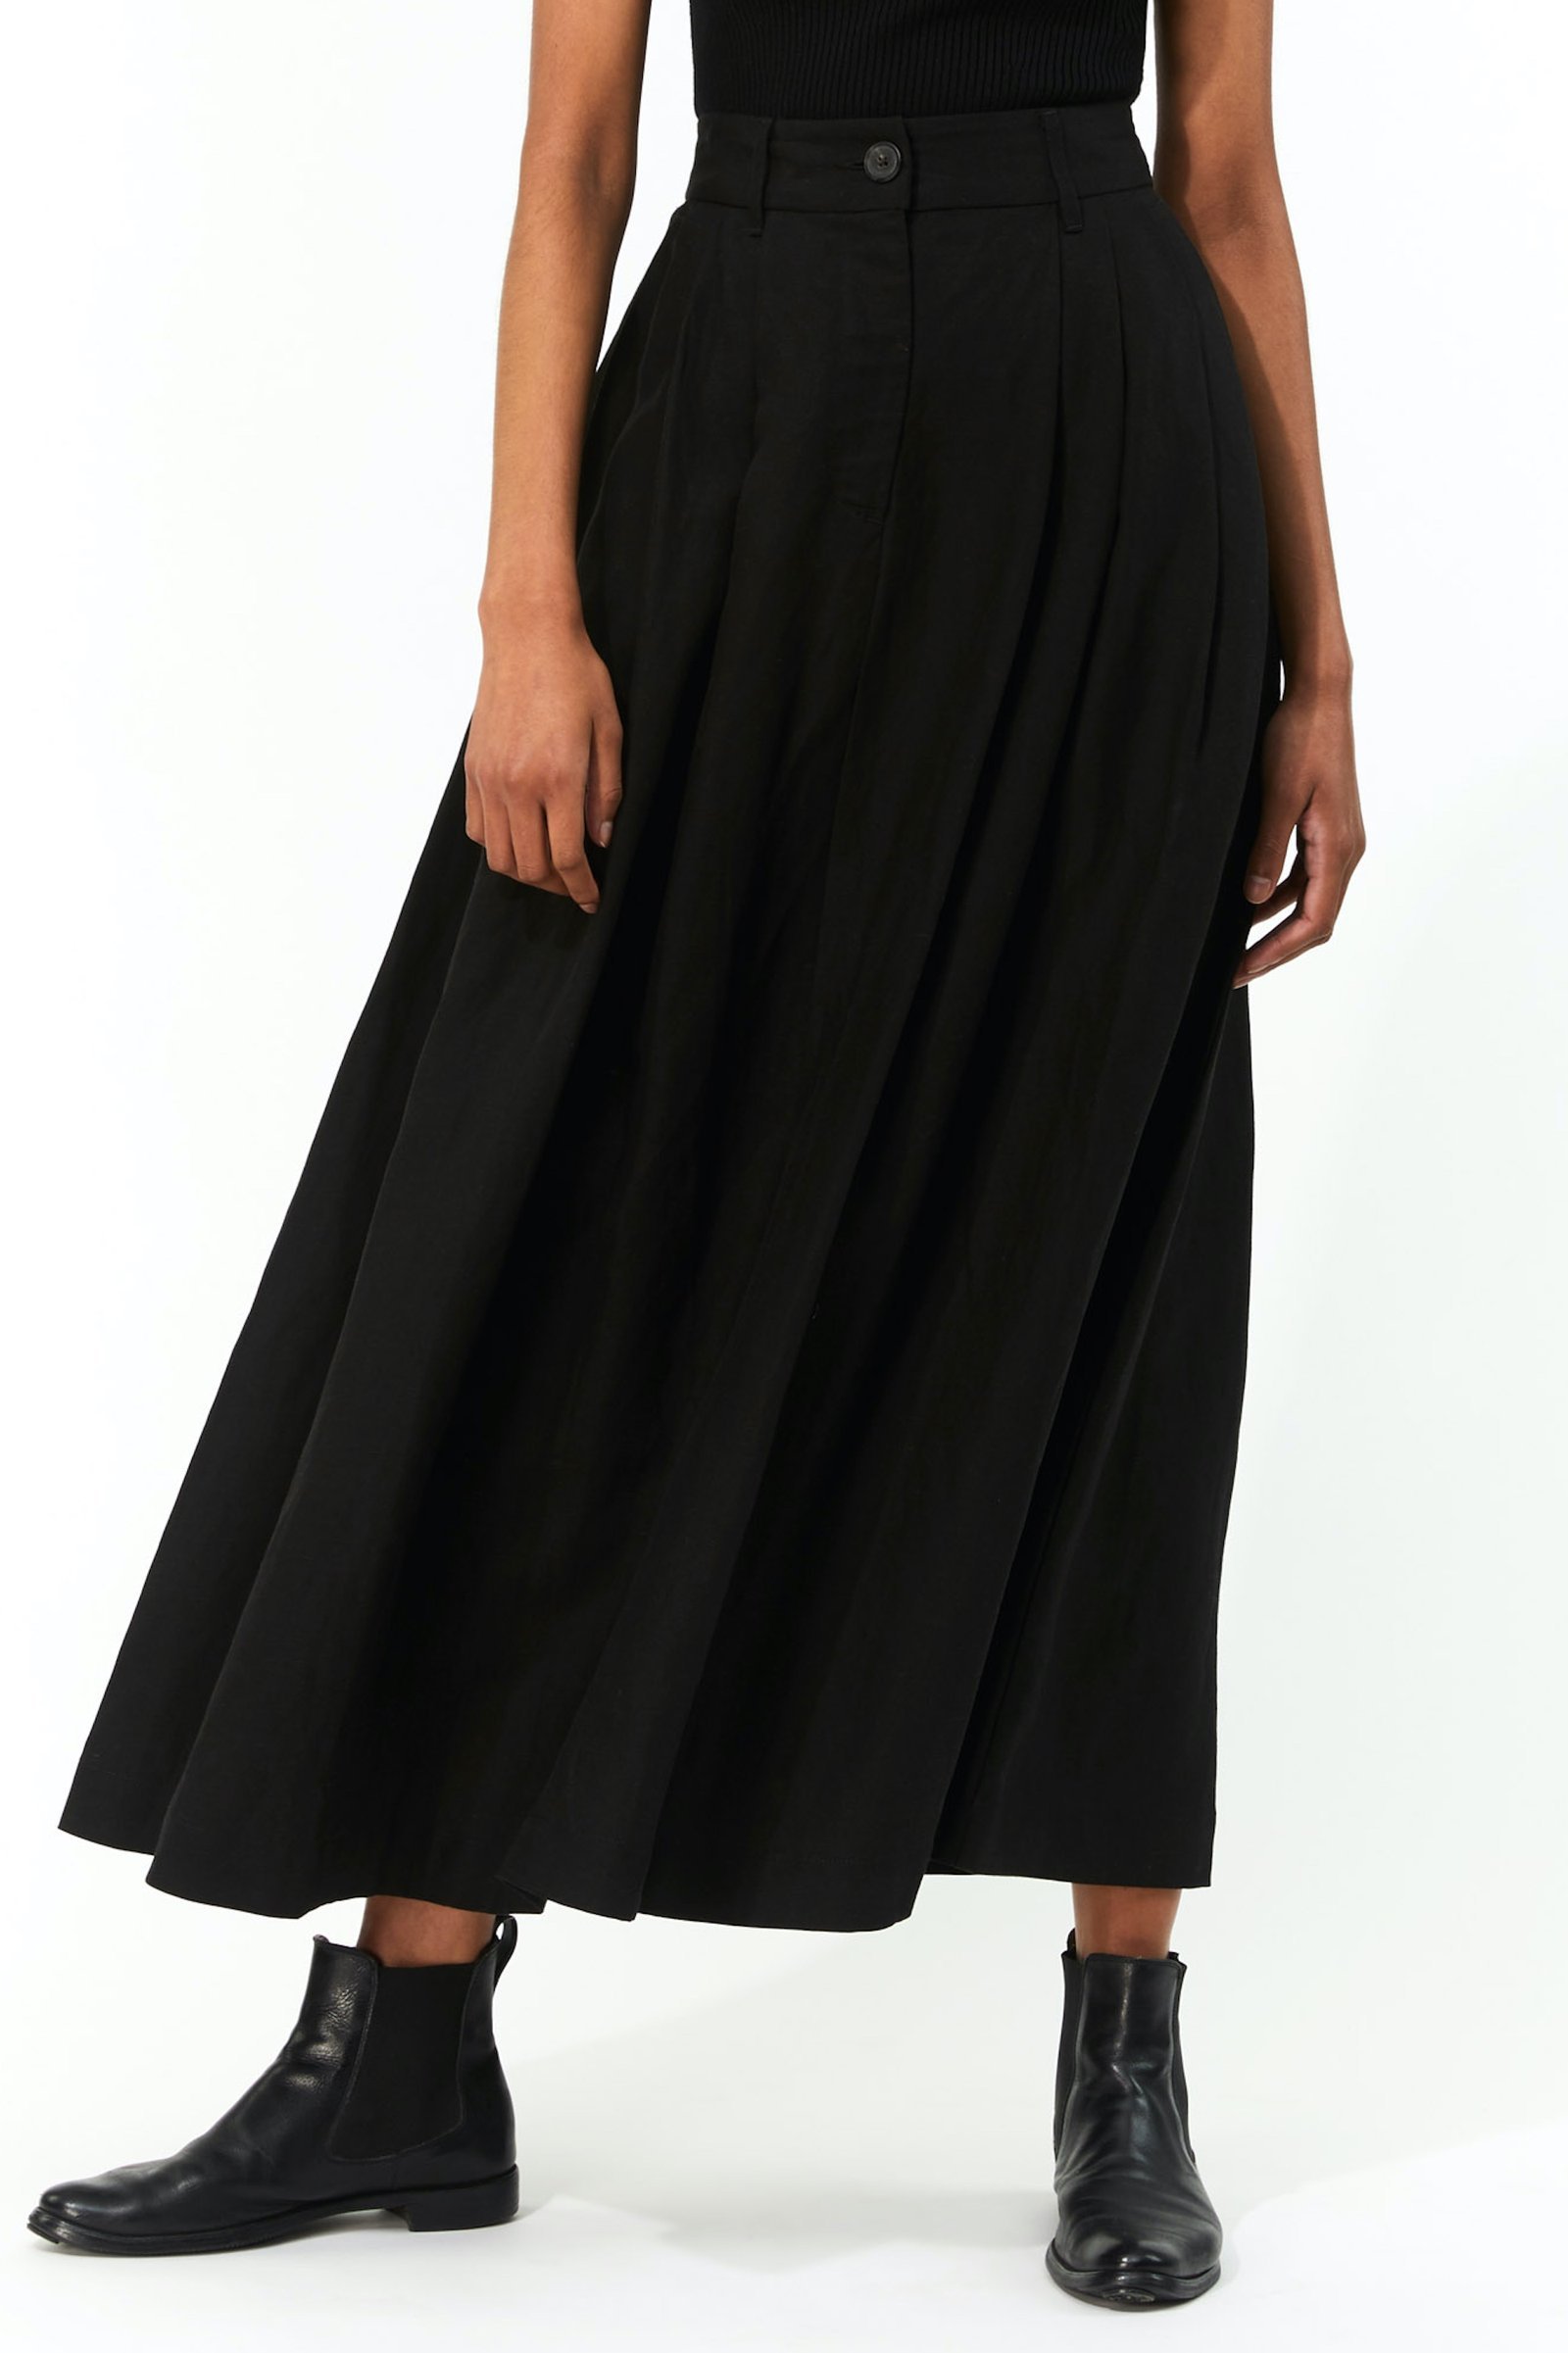 tulay skirt - black